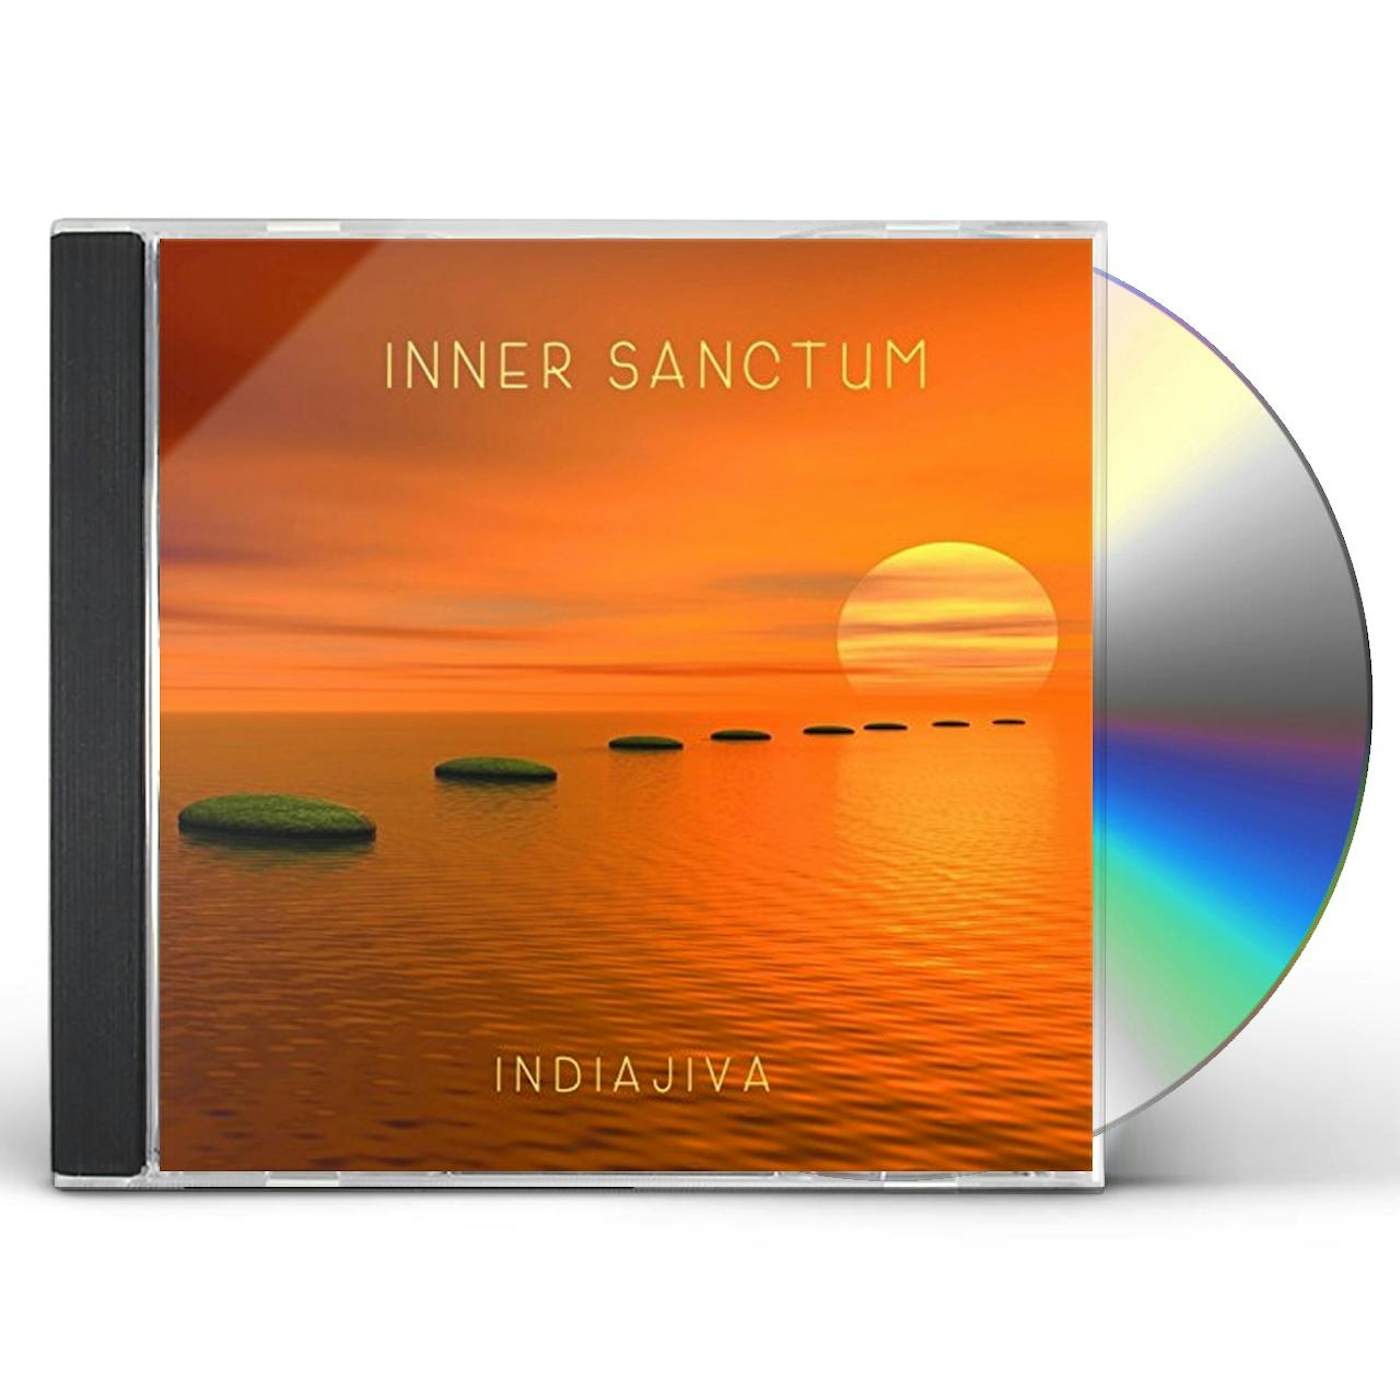 Indiajiva INNER SANCTUM CD